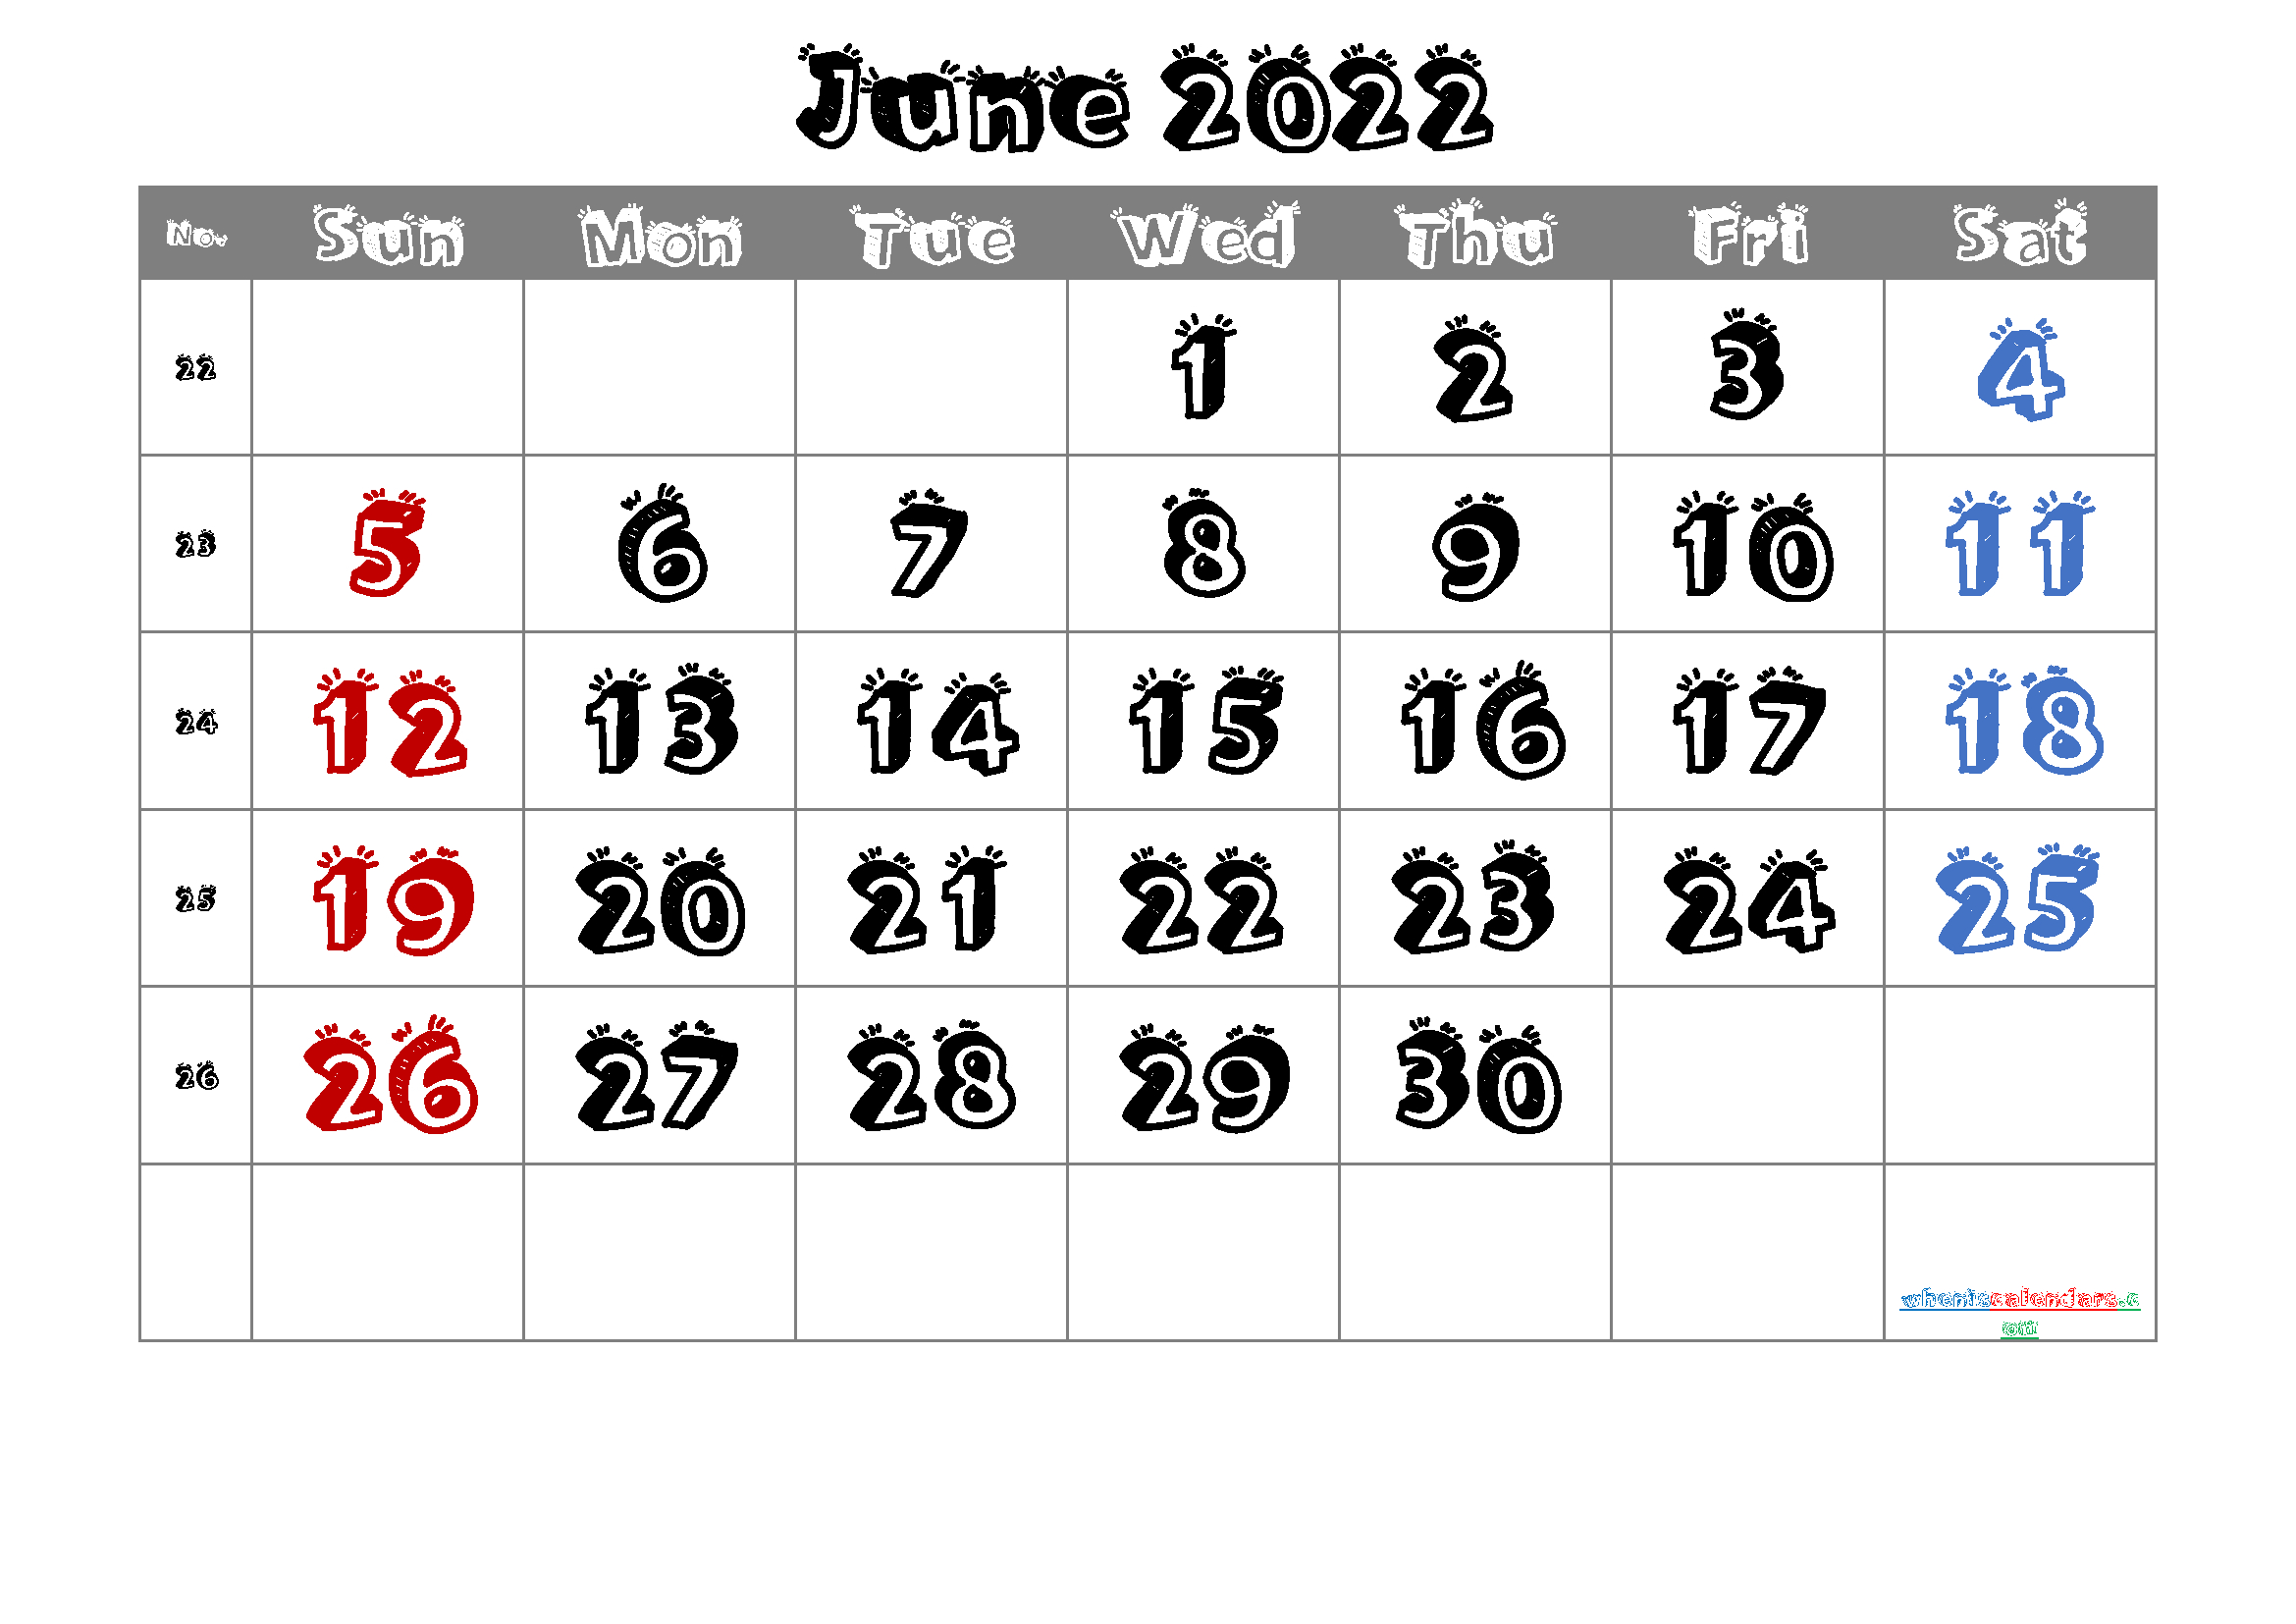 Catch Free Calendar June 2022